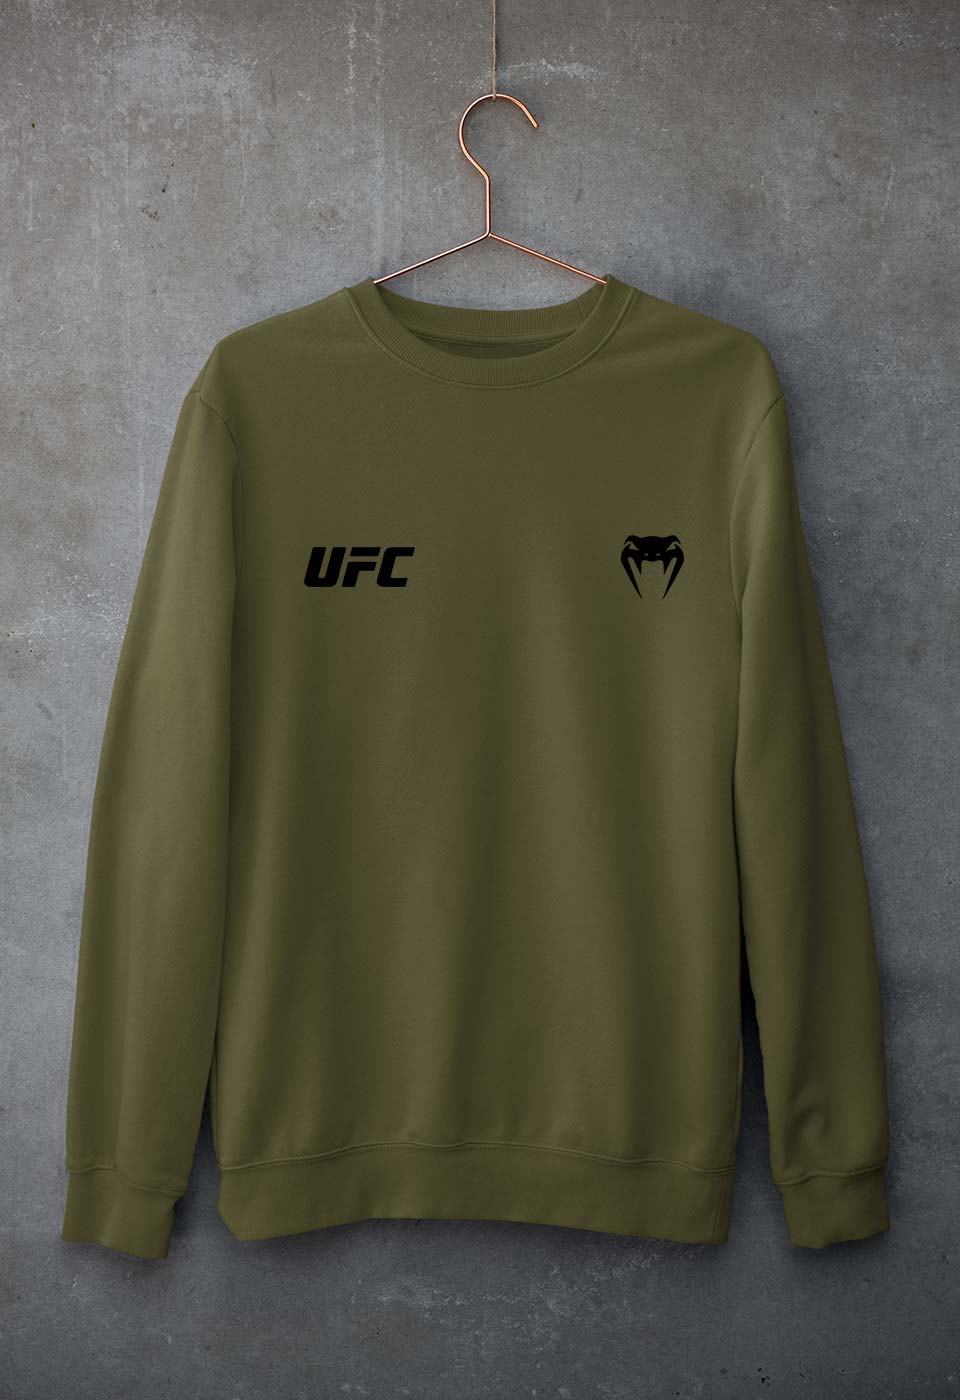 UFC Venum Unisex Sweatshirt for Men/WomenOlive Green-Ektarfa.co.in